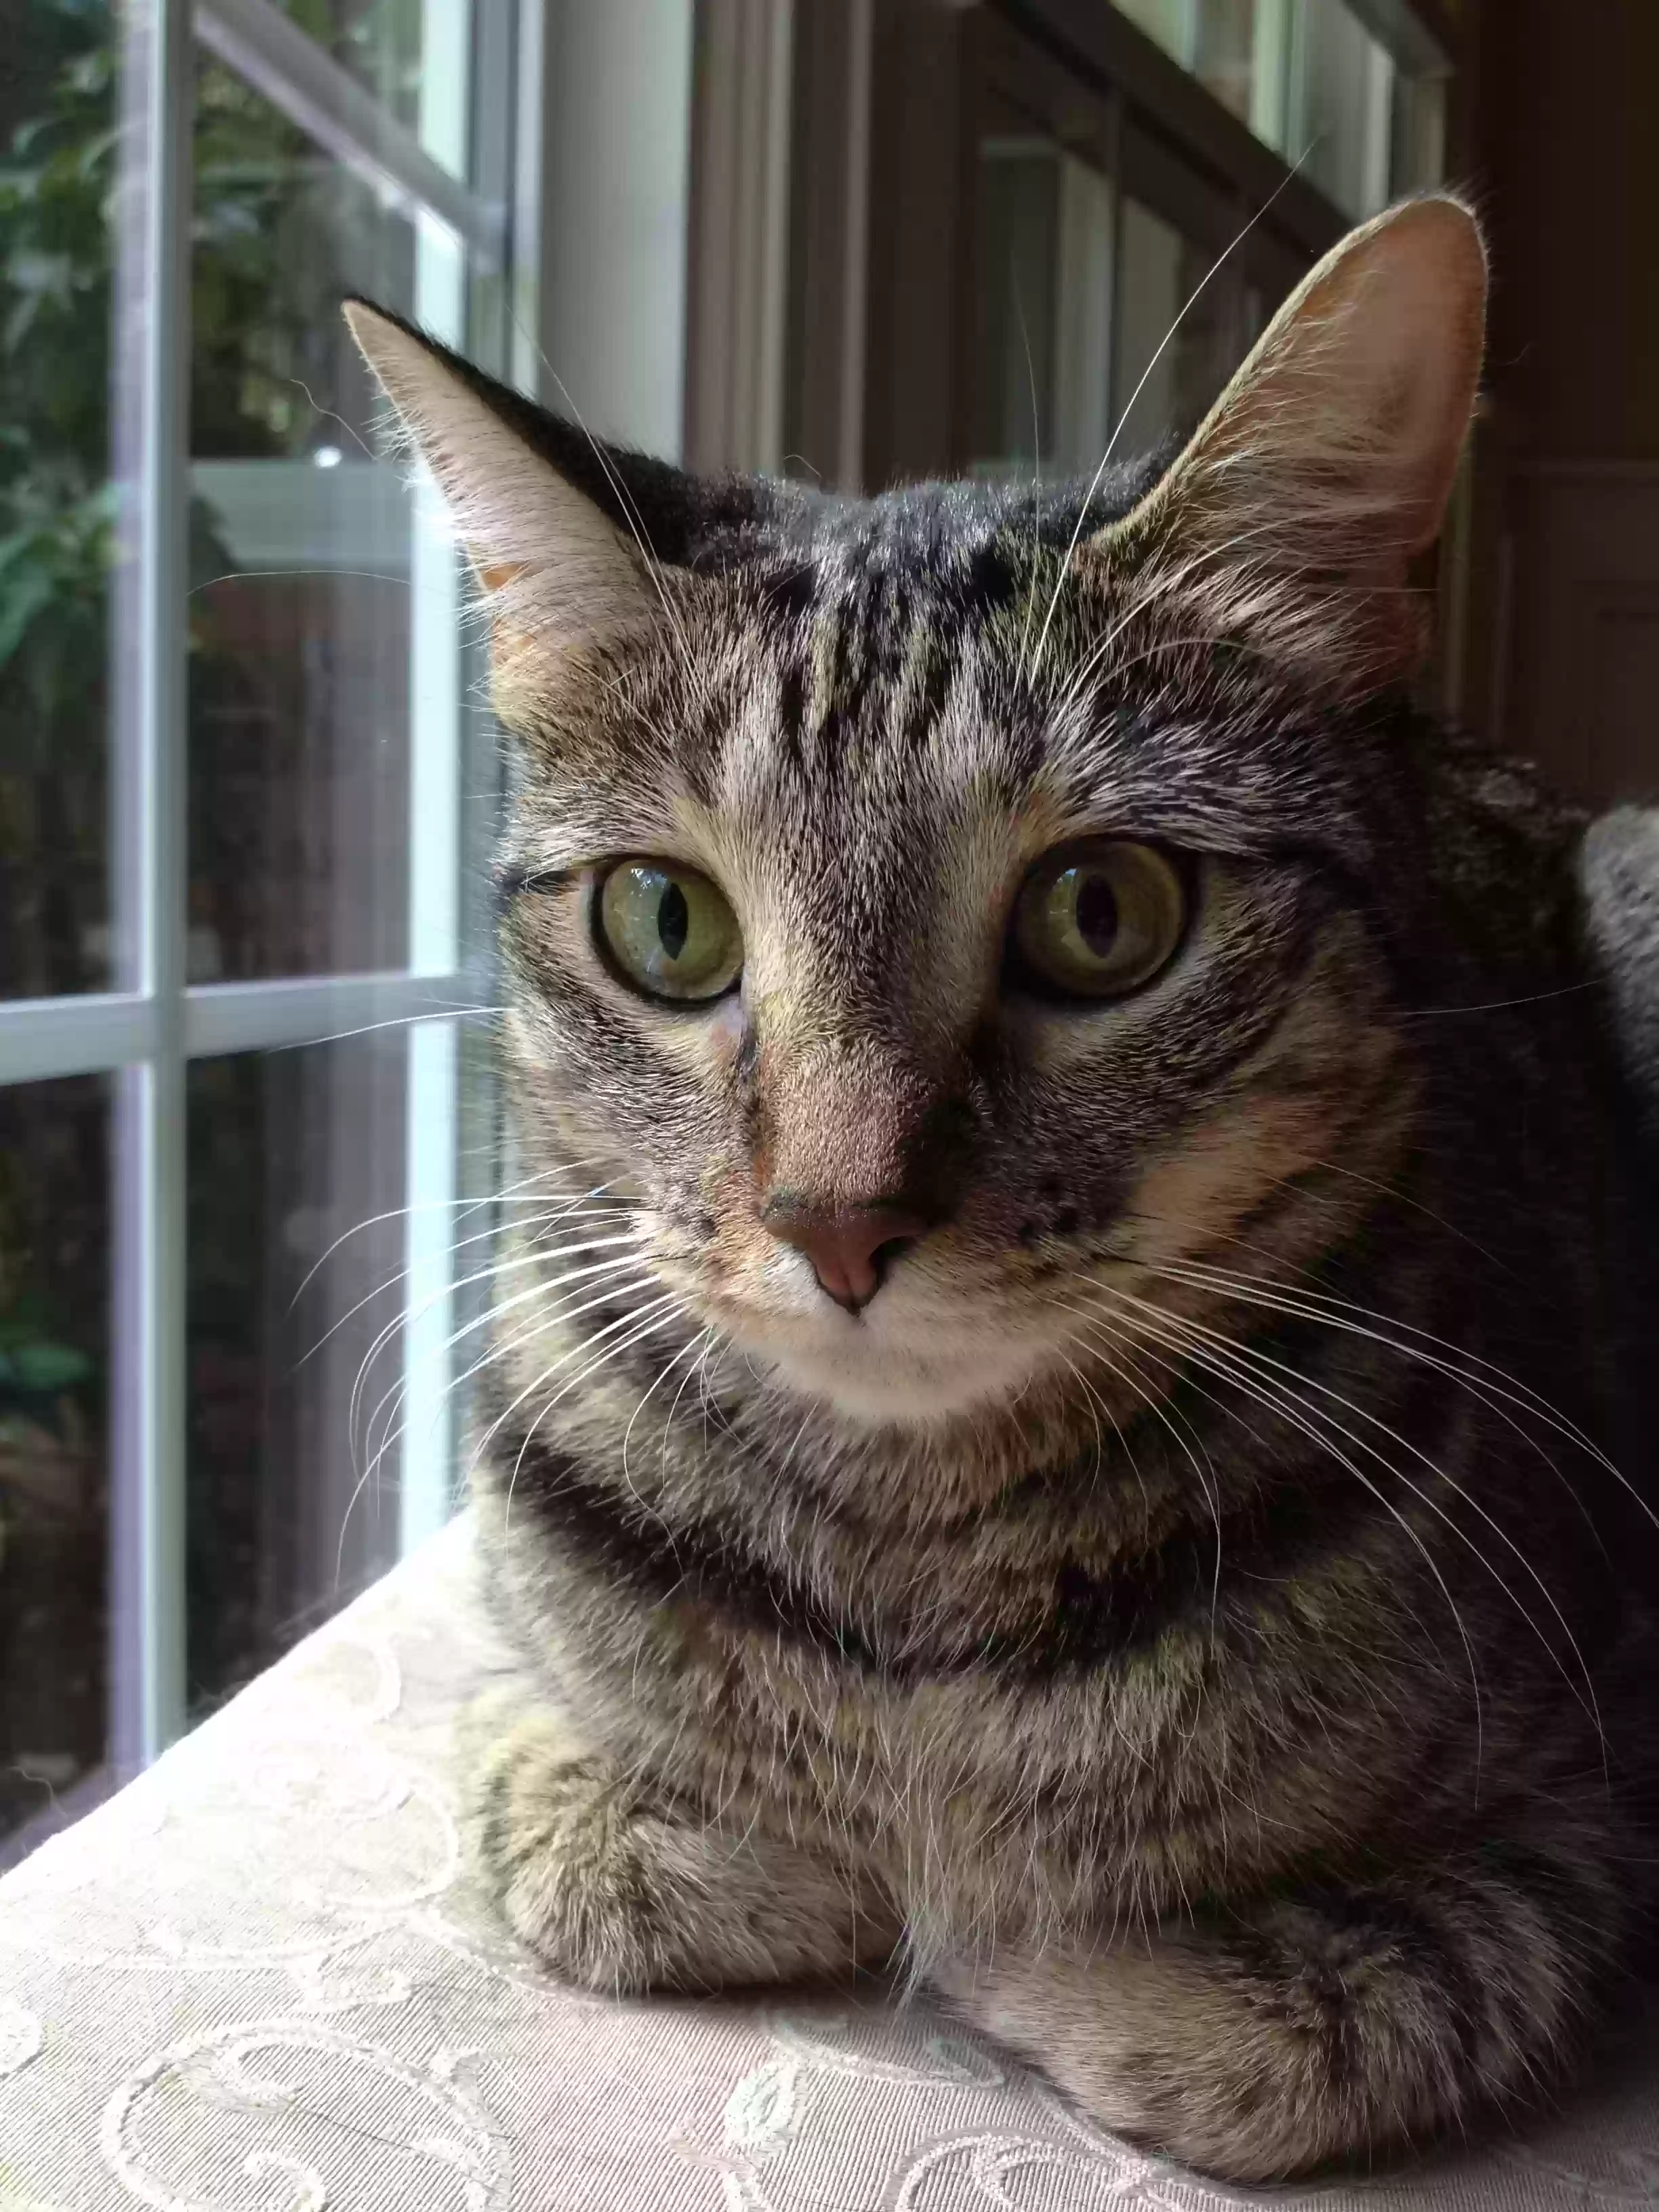 adoptable Cat in Atlanta,GA named Nutmeg